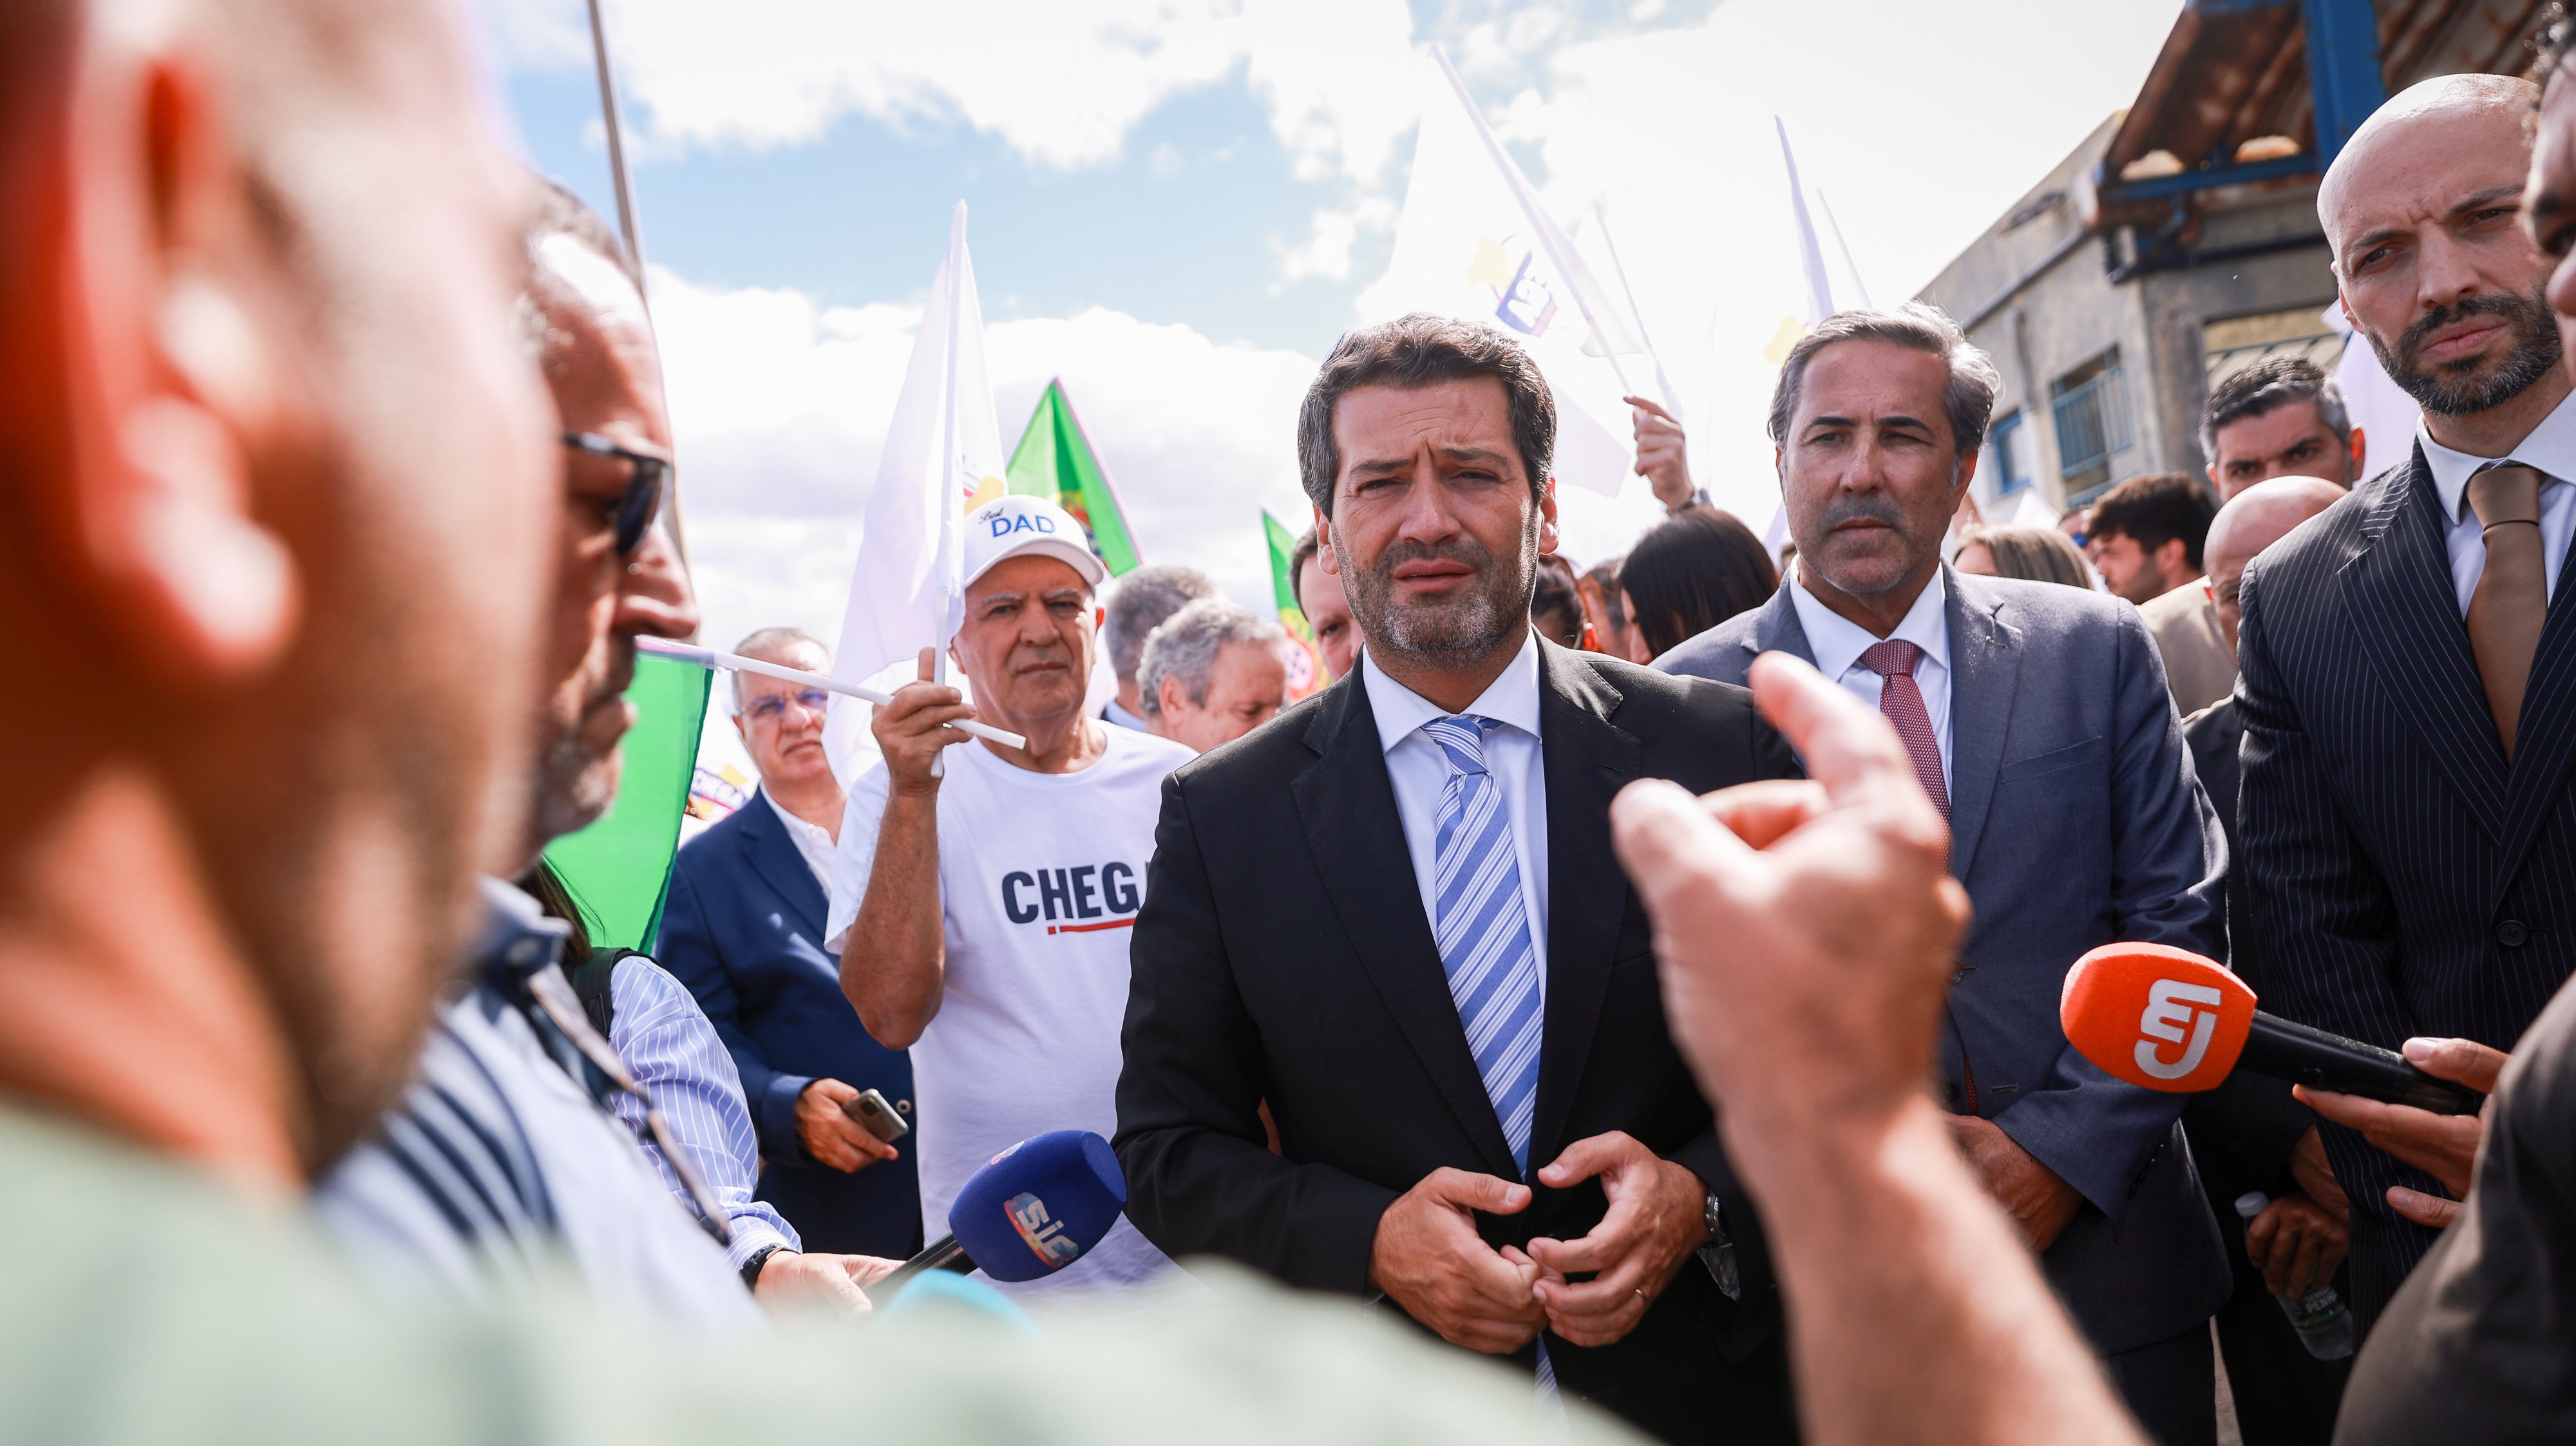 O Chega passou o penúltimo dia de campanha com uma arruada no centro do Funchal